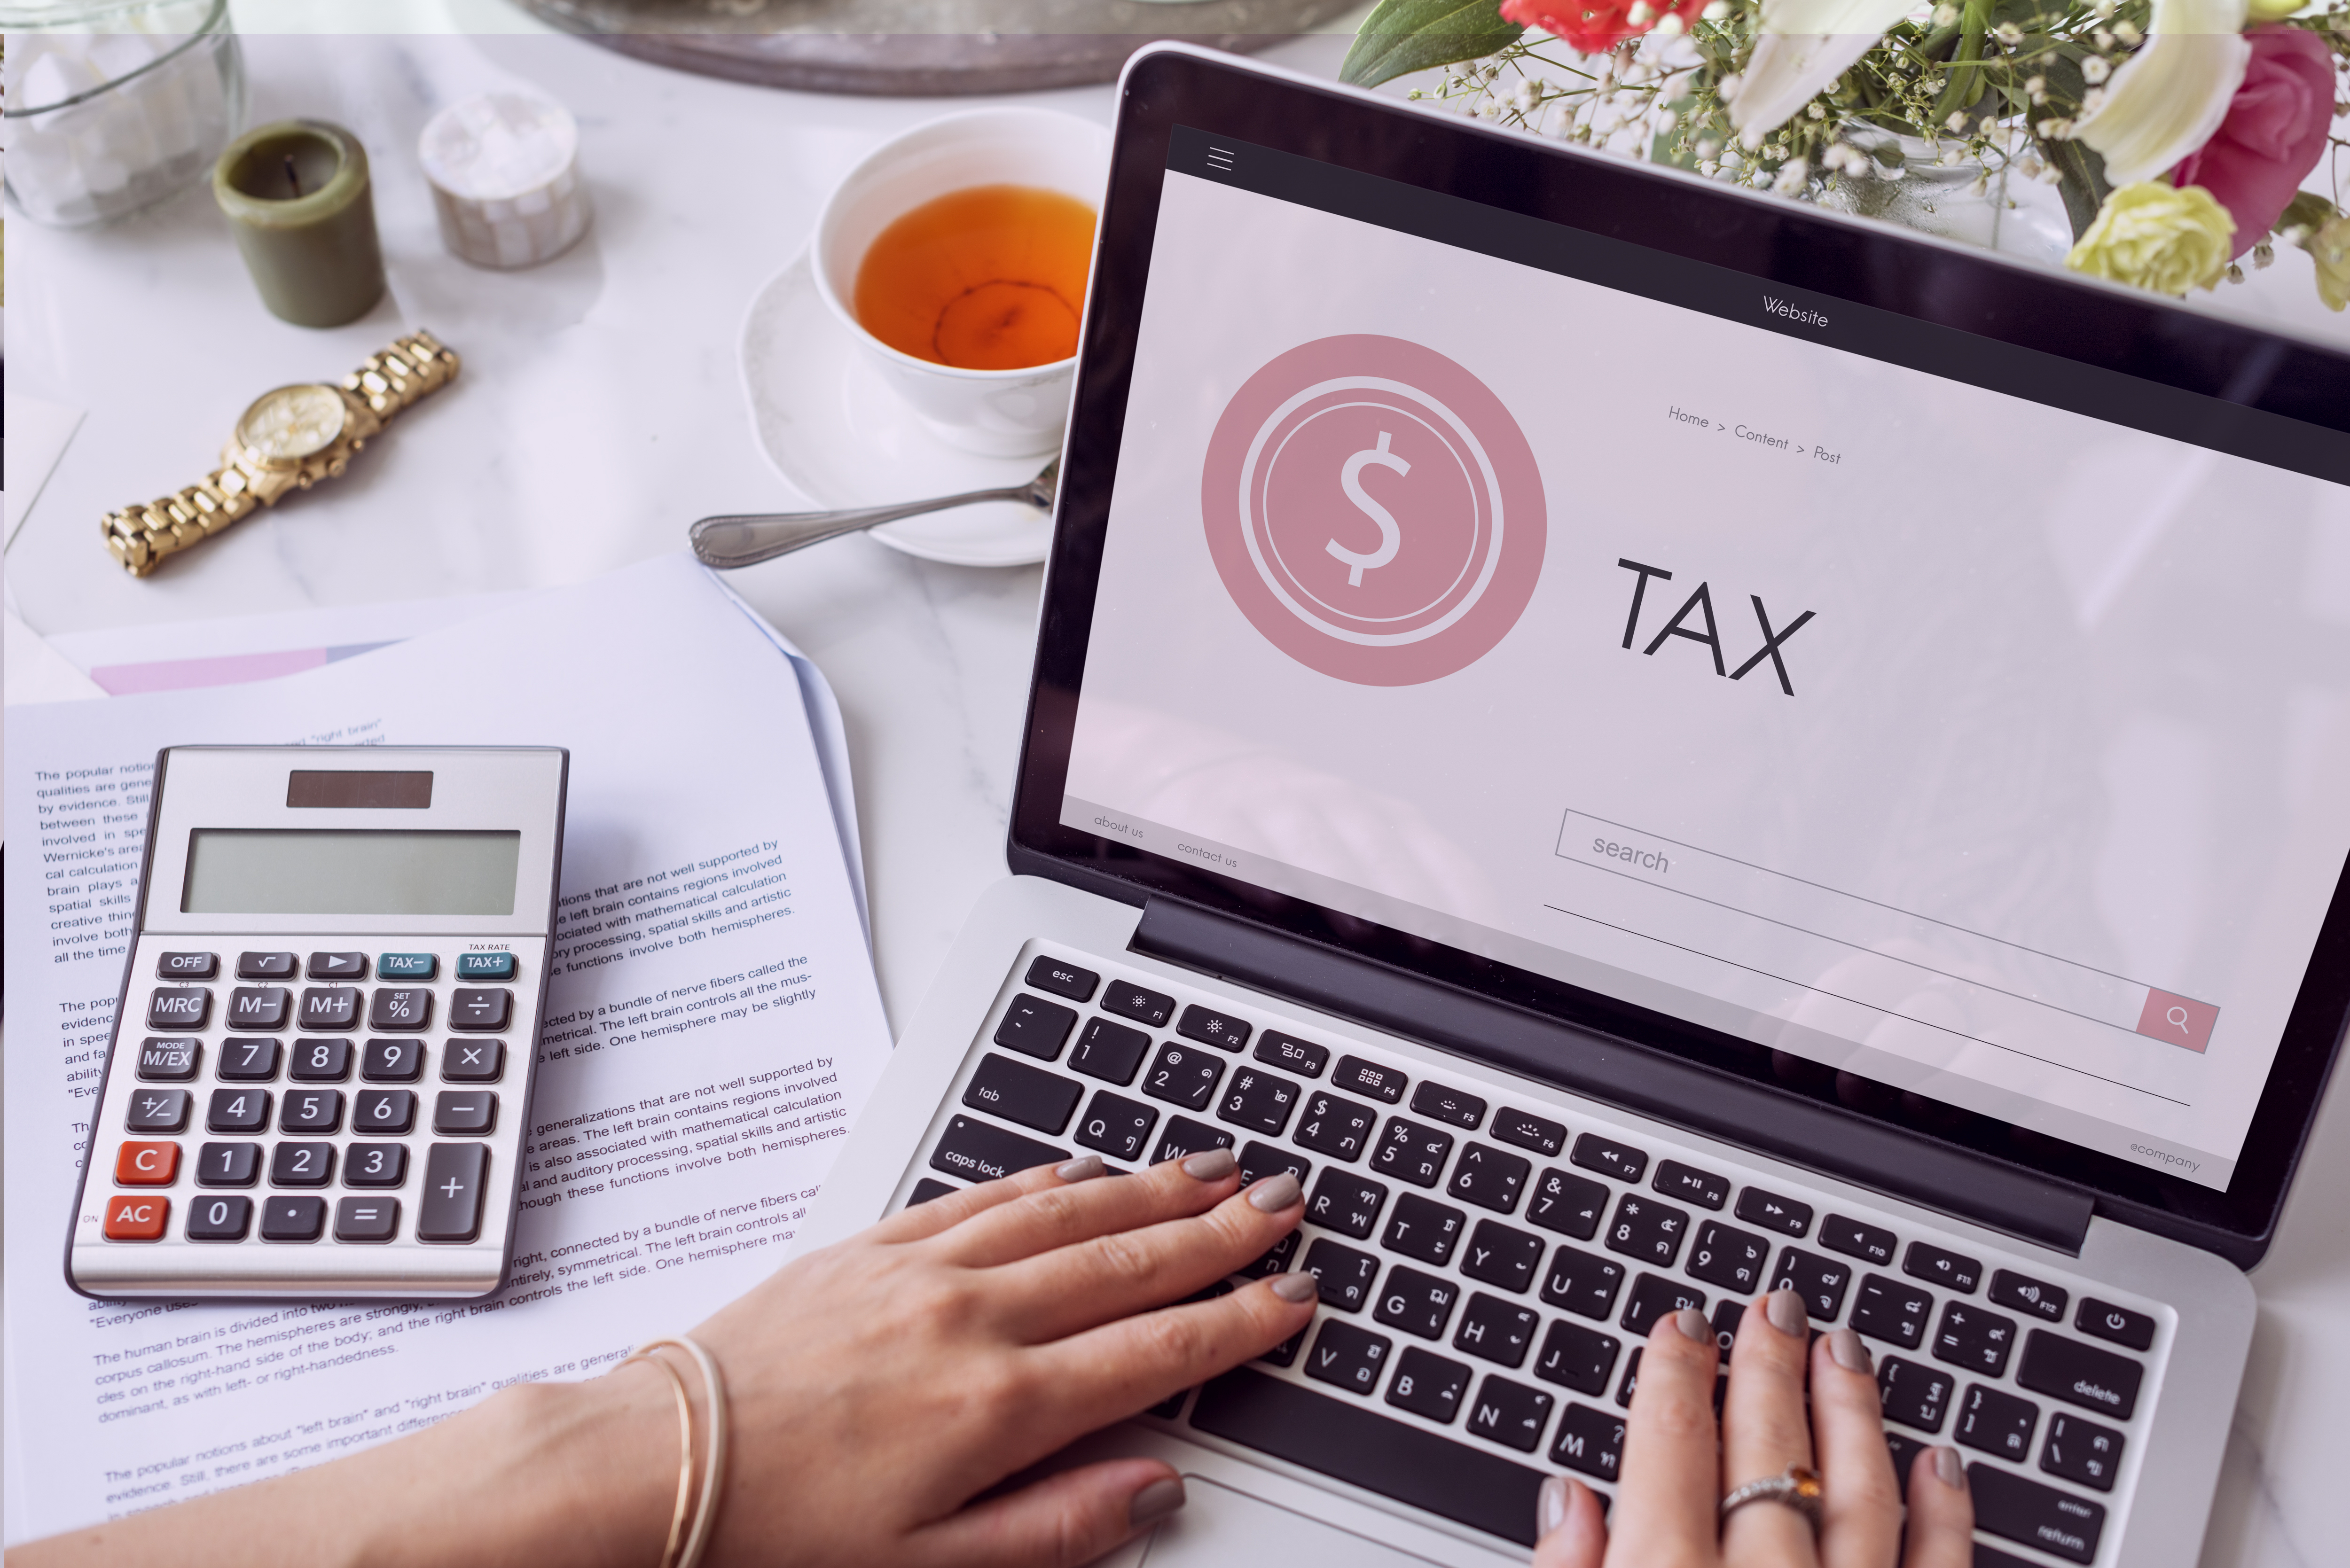 Як платник податків може дізнатися про залишок коштів на єдиному рахунку та отримати витяг щодо стану розрахунків з бюджетом через Електронний кабінет?